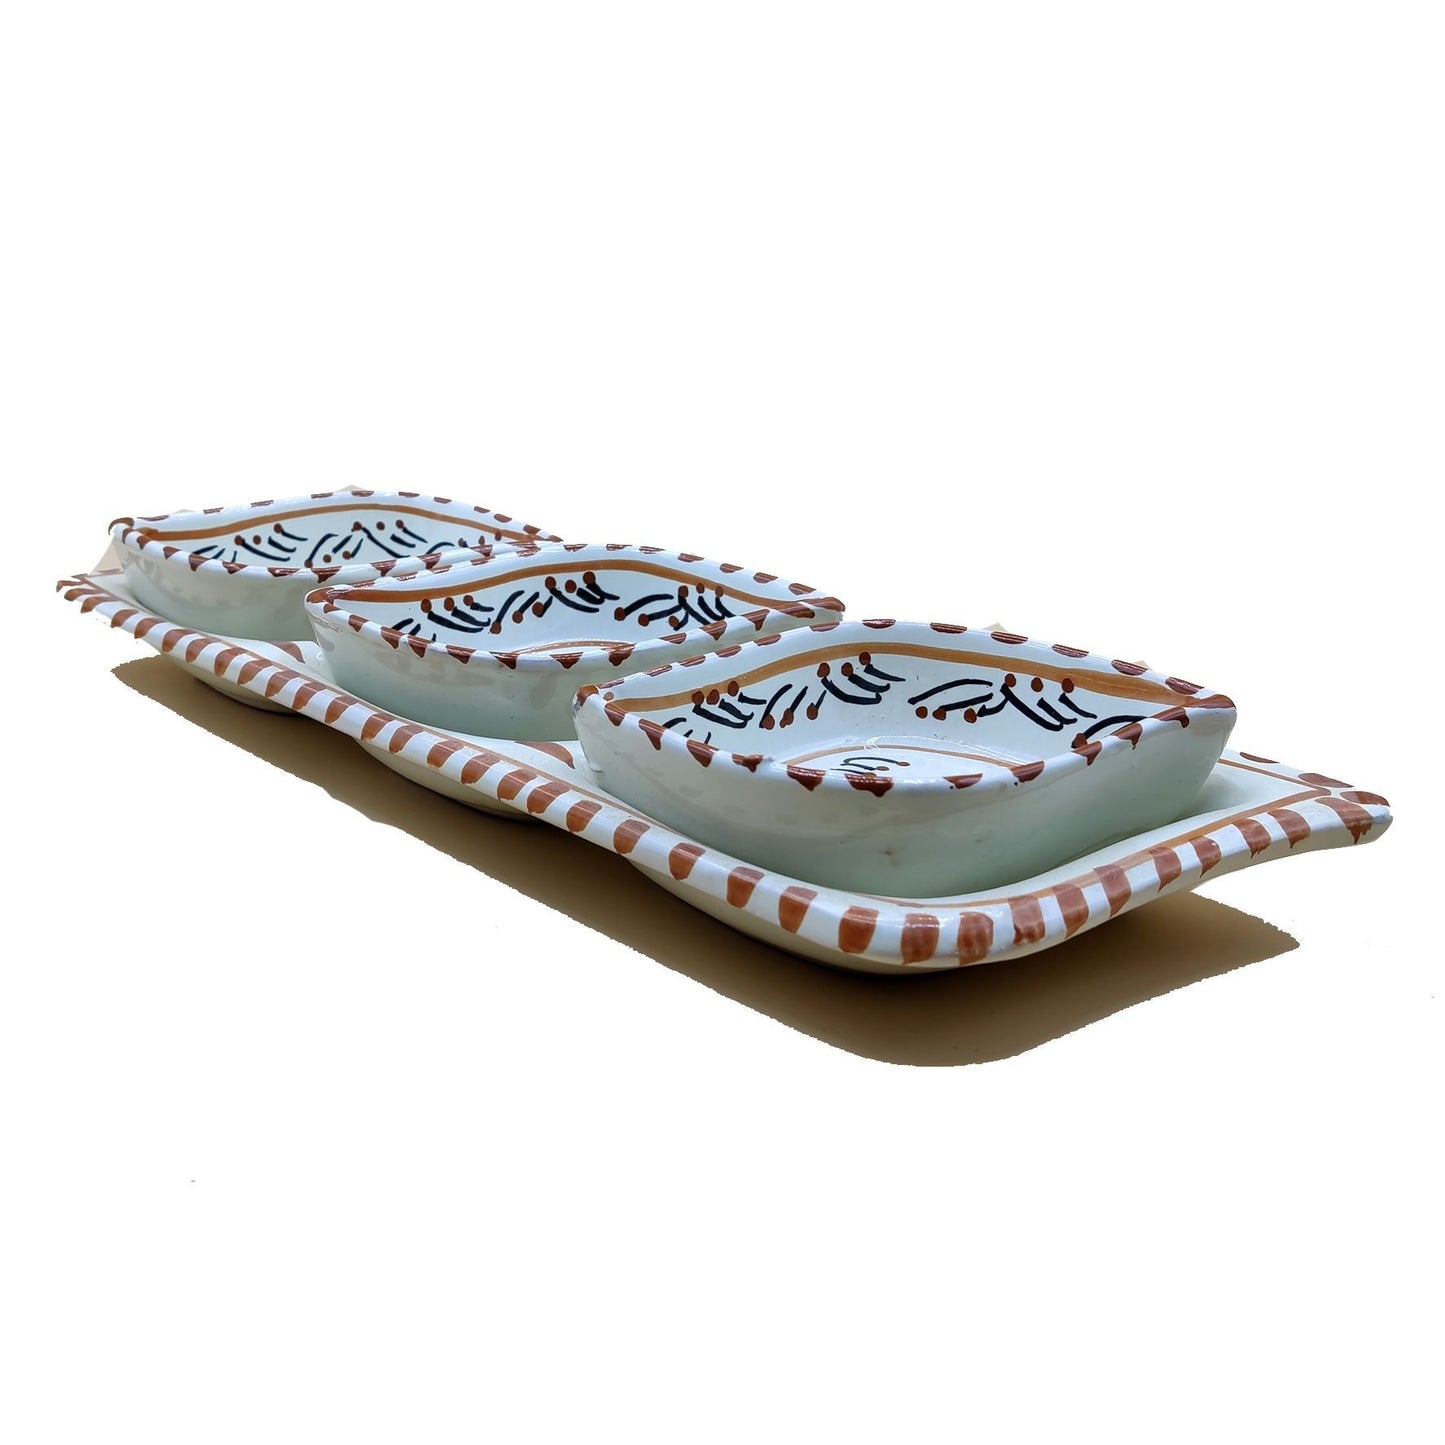 Antipastiera Piatto Etnico Ceramica Terracotta Tunisina Marocchina 2212201235